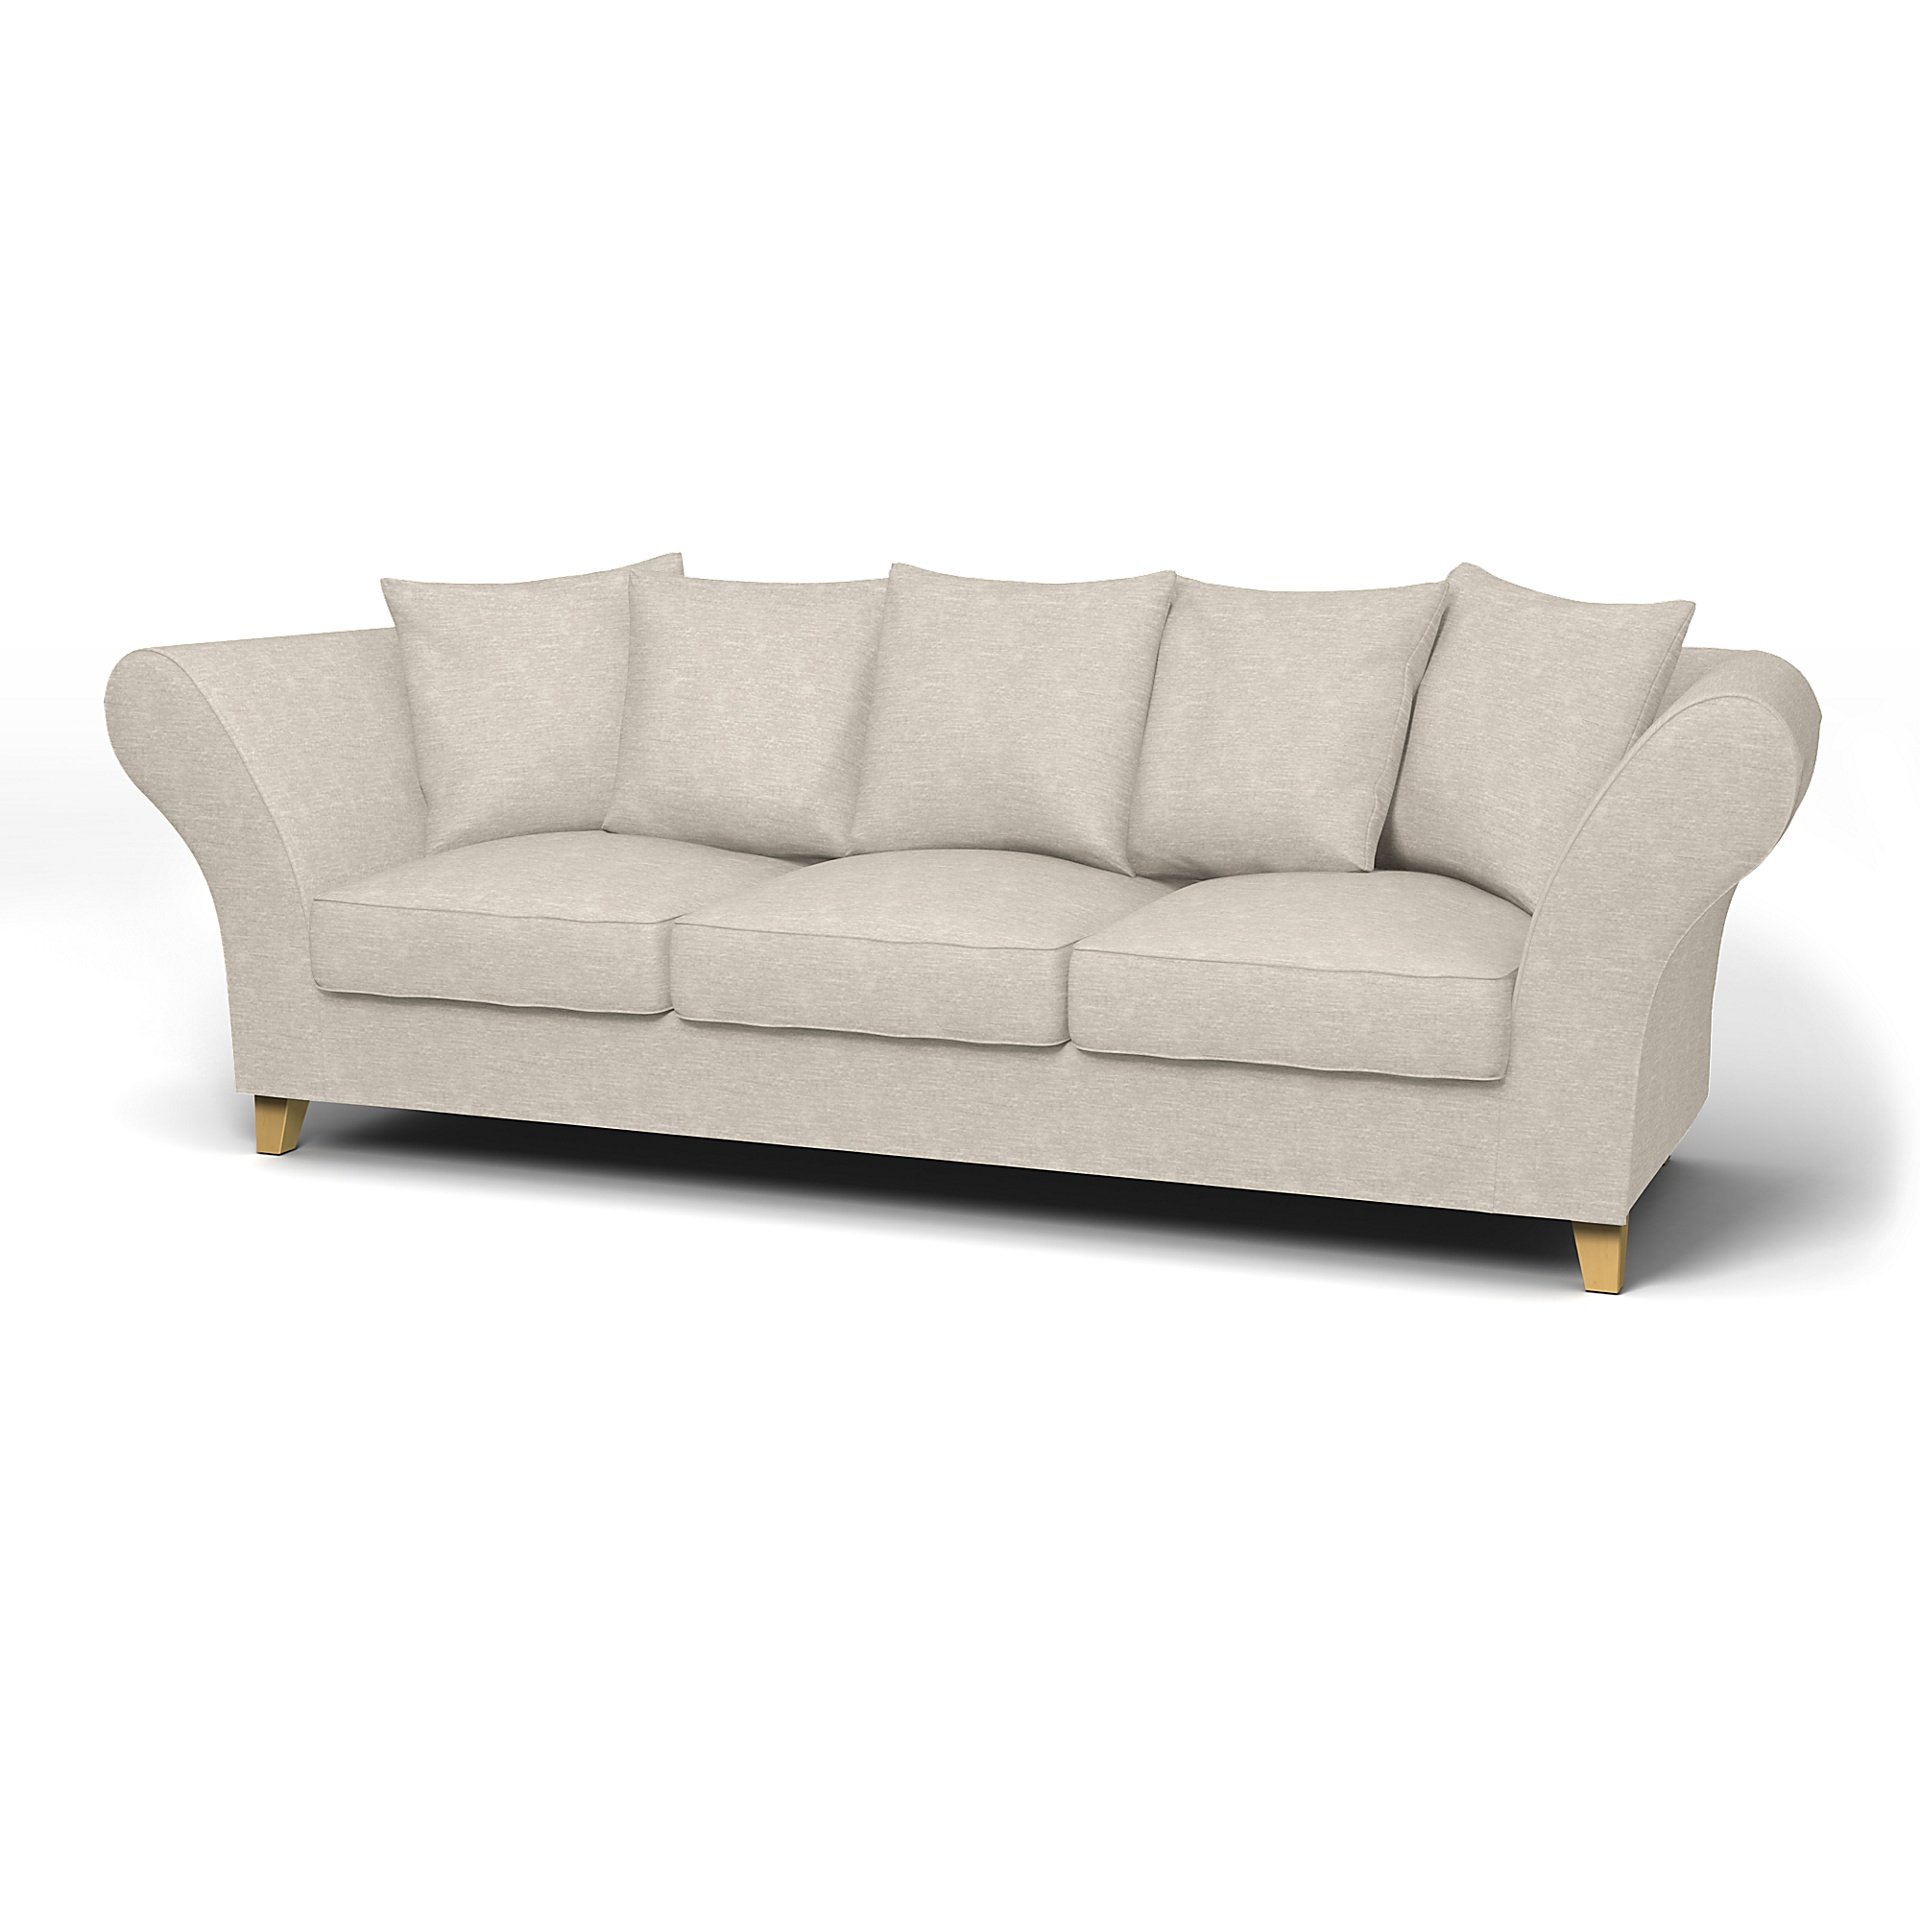 IKEA - Backa 3.5 Seater Sofa Cover, Natural White, Velvet - Bemz